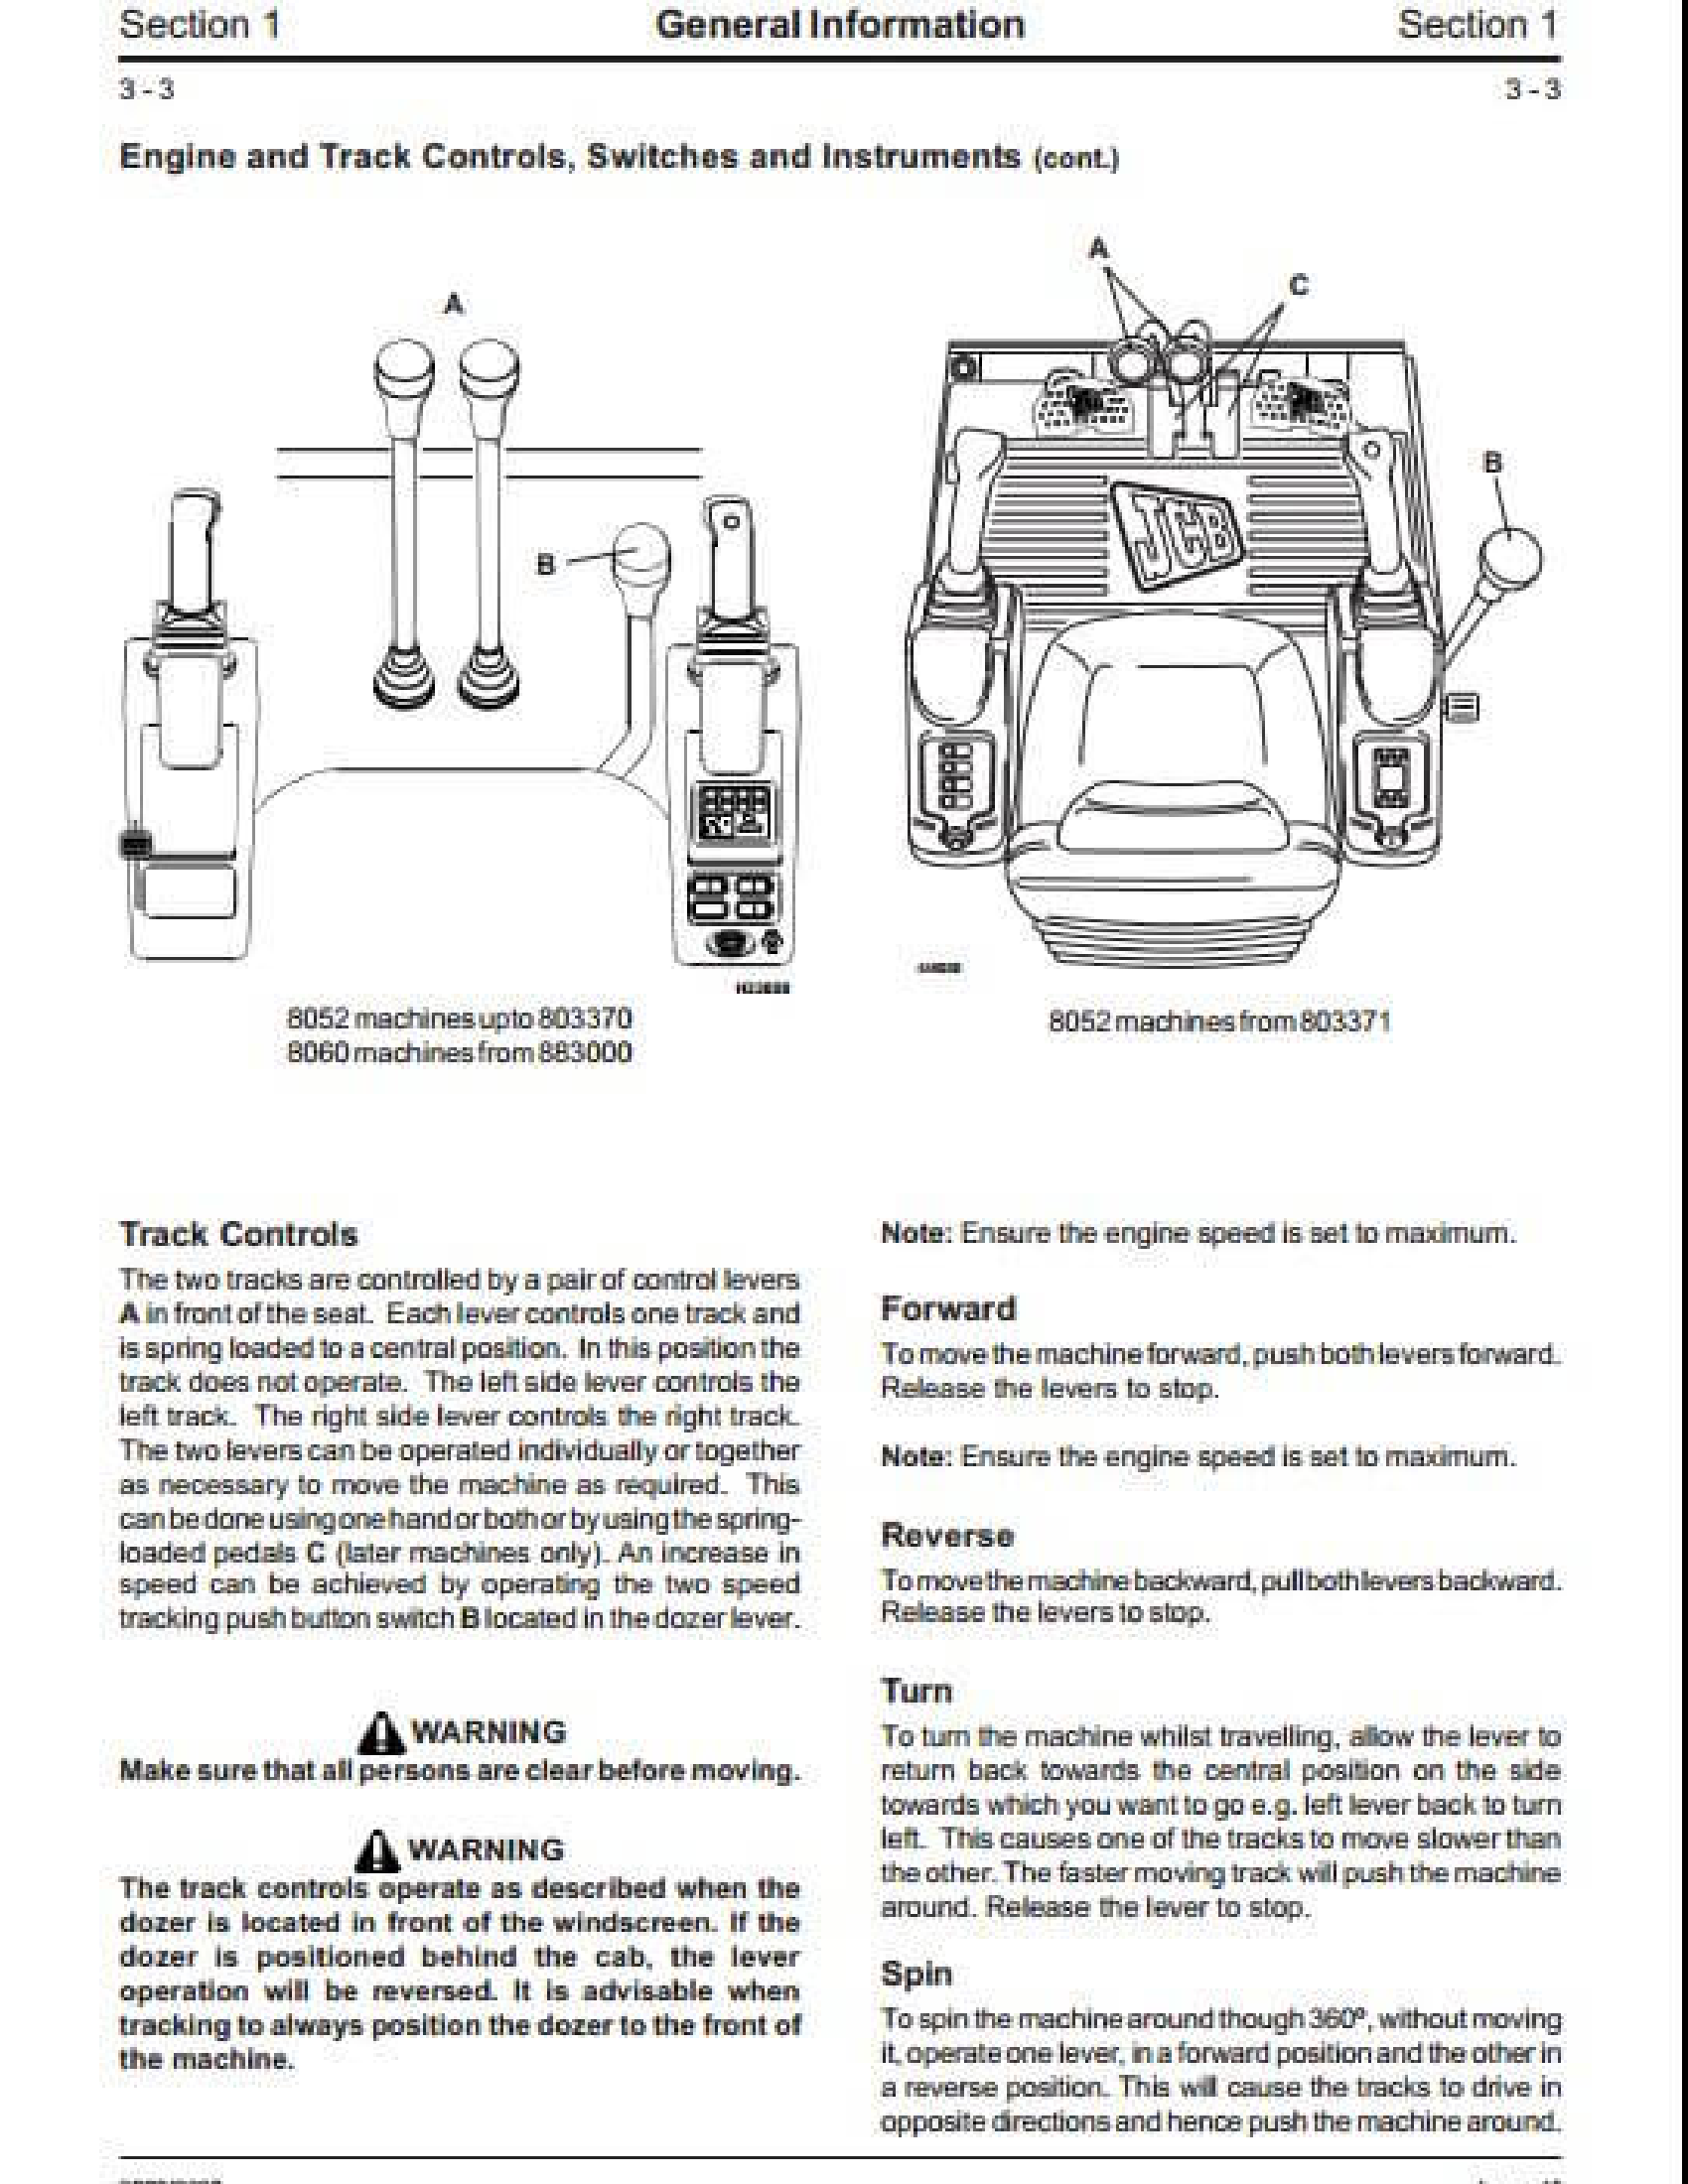 JCB 208S Backhoe Loader manual